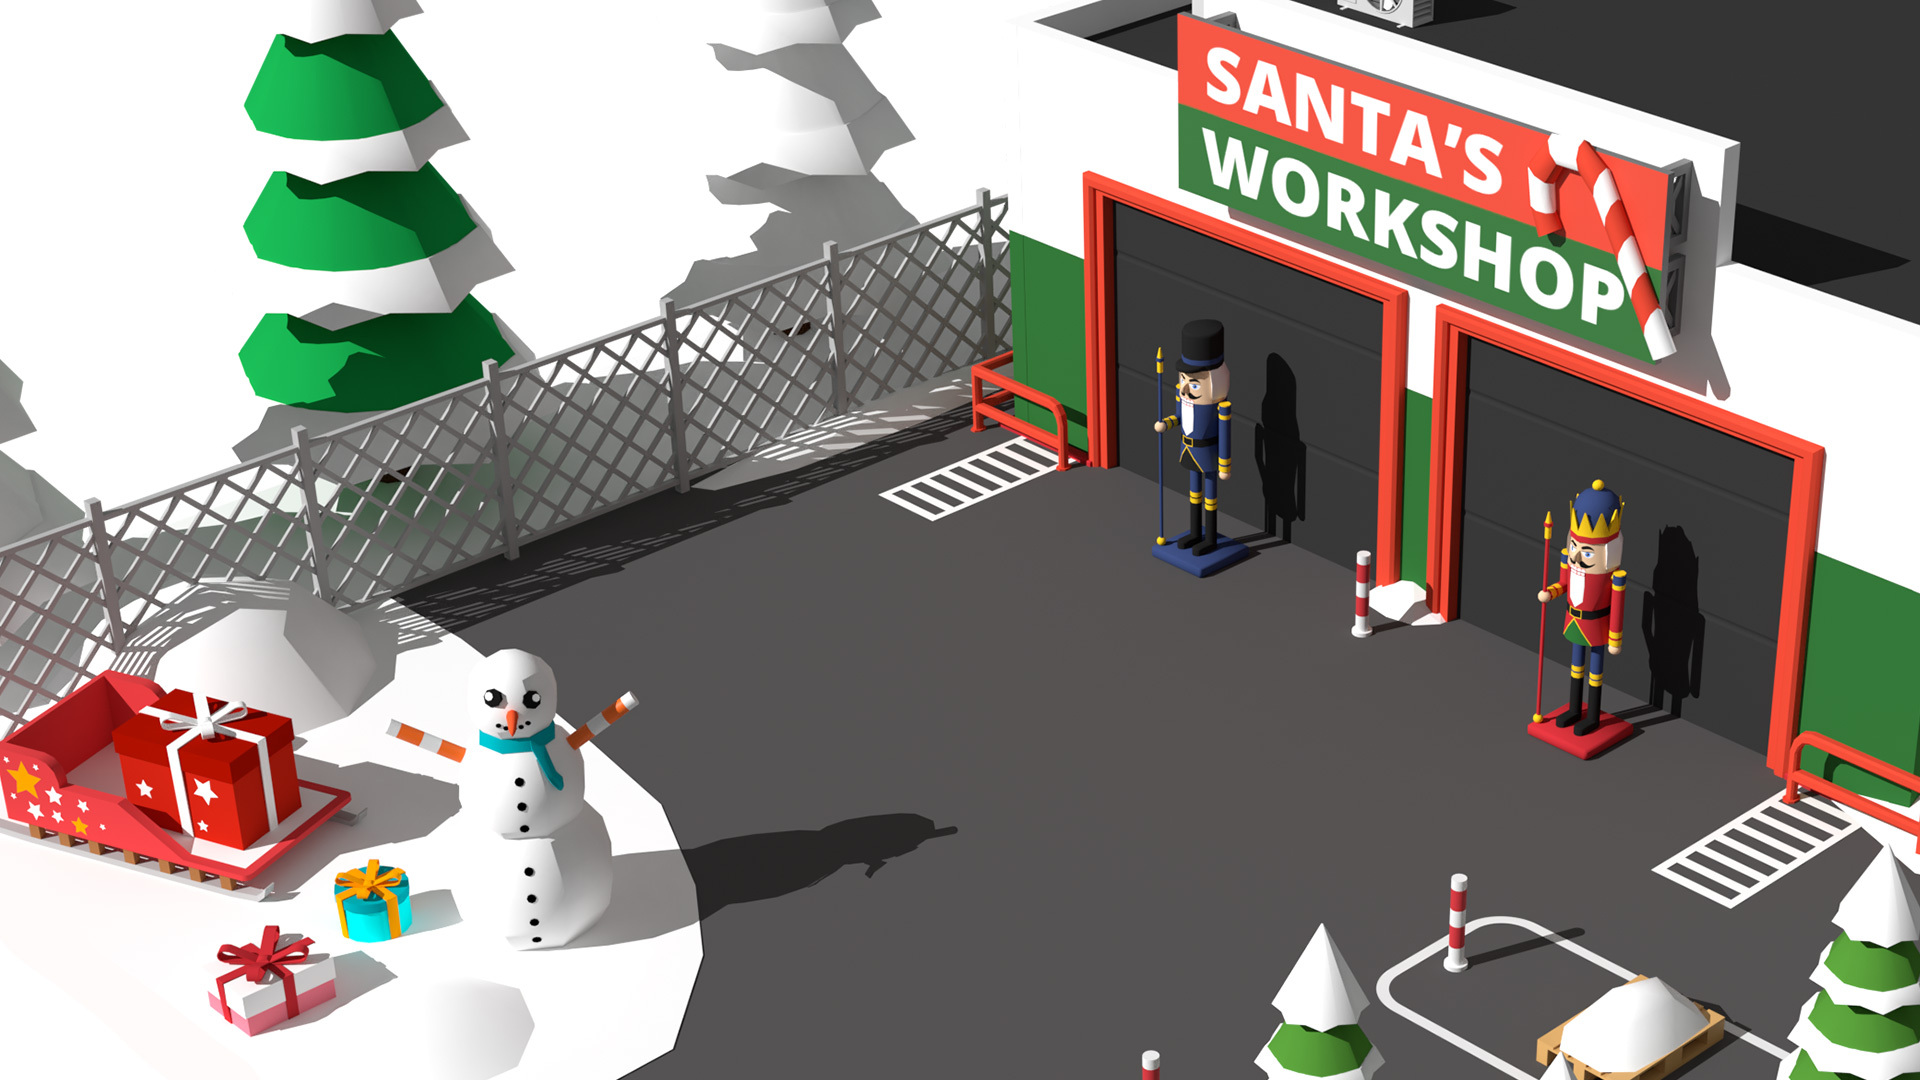 Forklift Extreme: Santa's Workshop